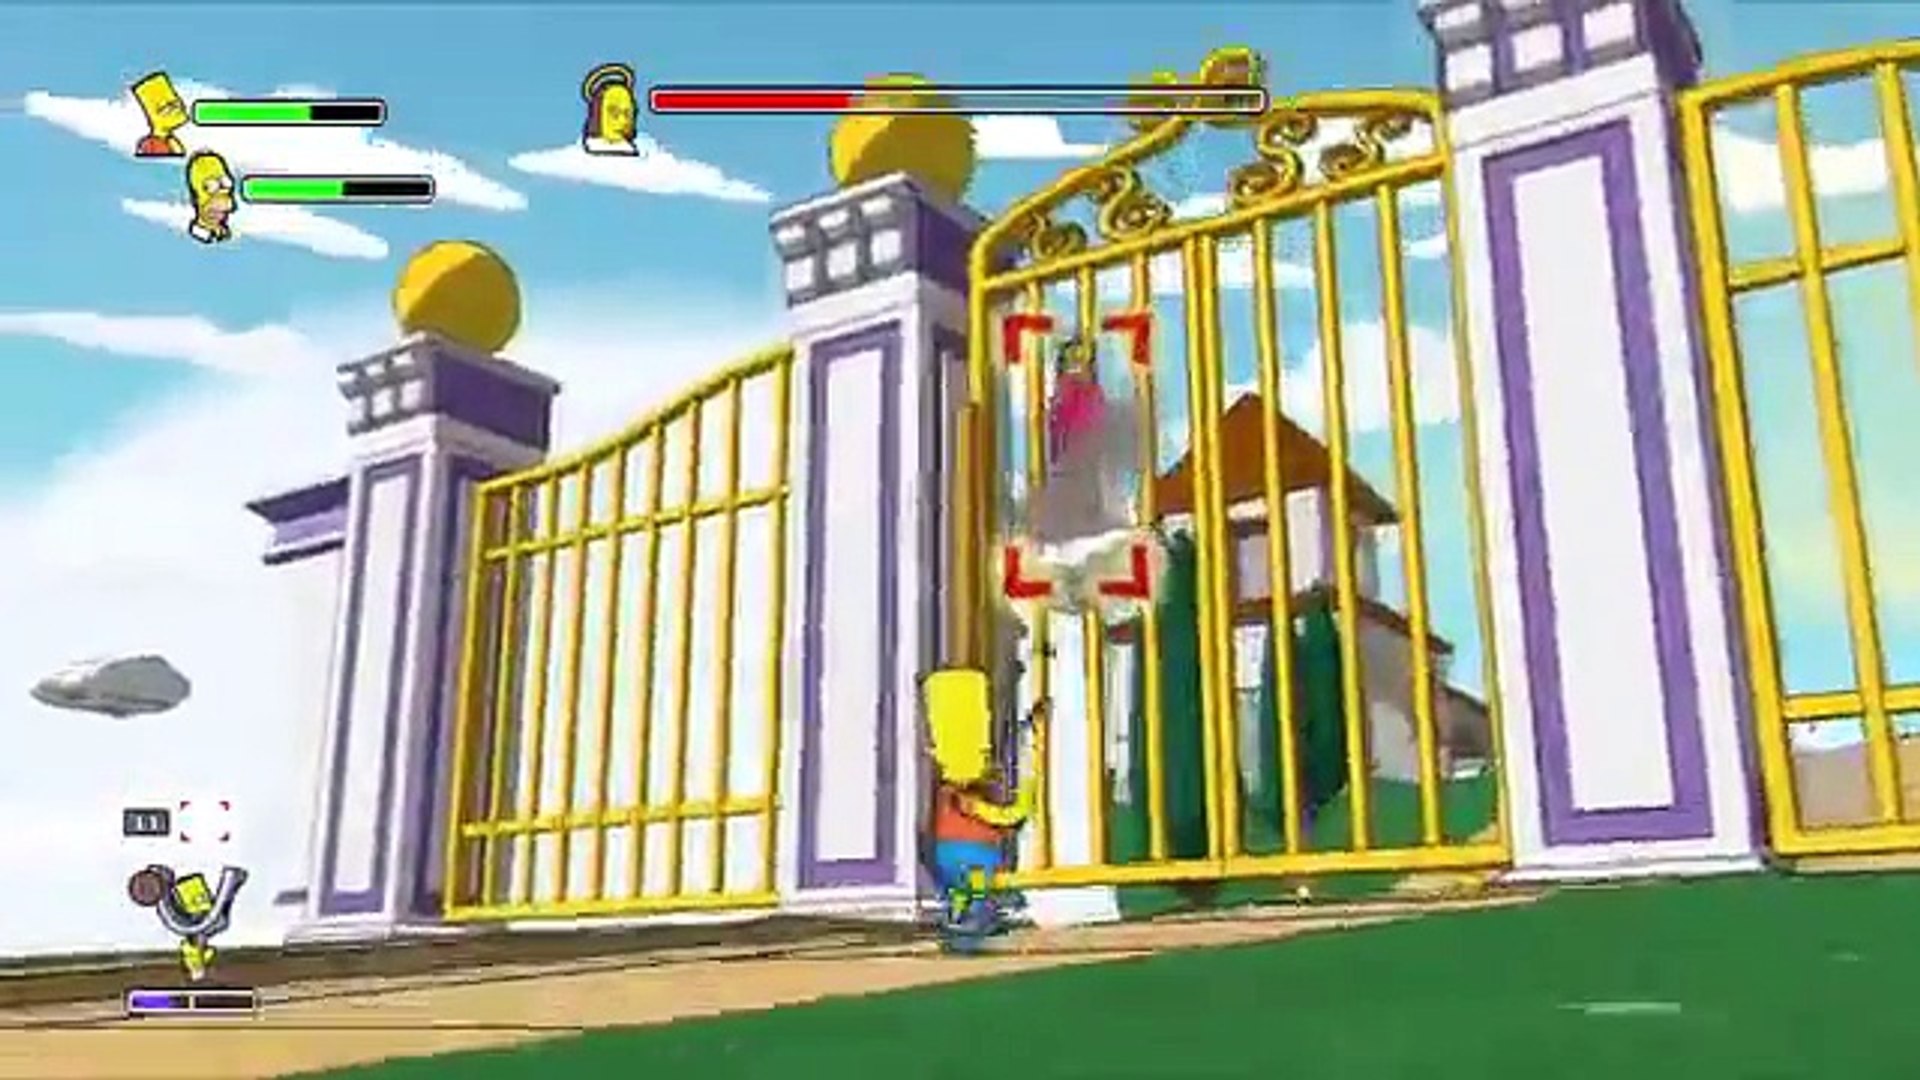 Les Simpson Episode 18 entier en francais Dieu des Simpson (FIN) -  Dailymotion Video